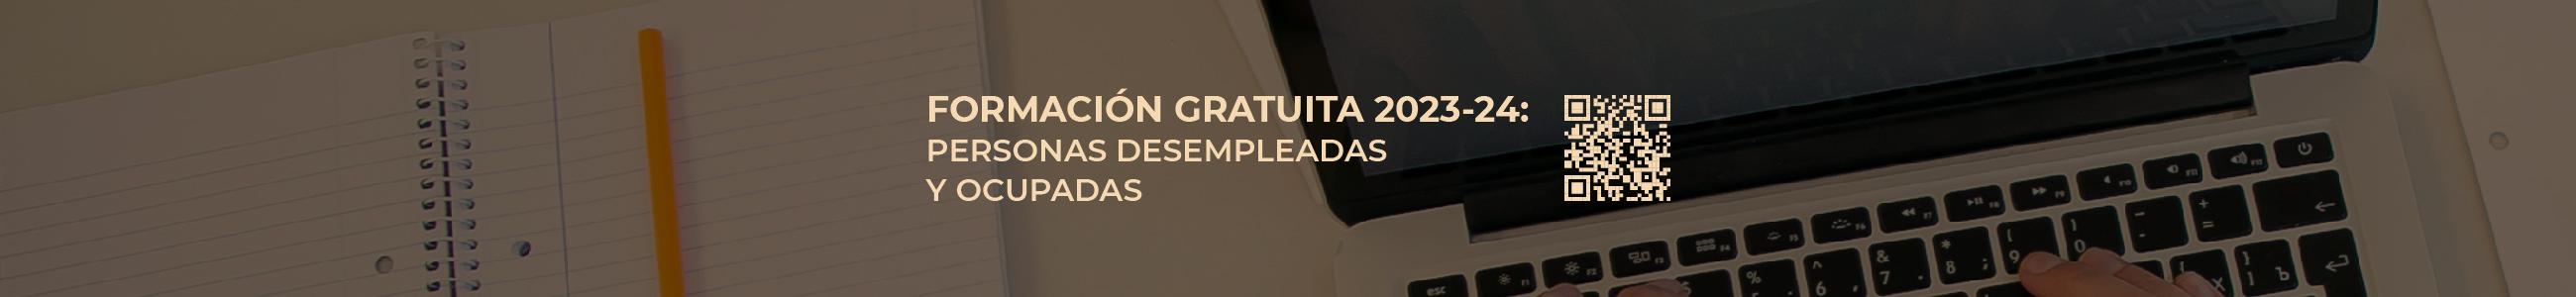 FORMACIÓN GRATUITA 2023/2024: PERSONAS DESEMPLEADAS Y OCUPADAS